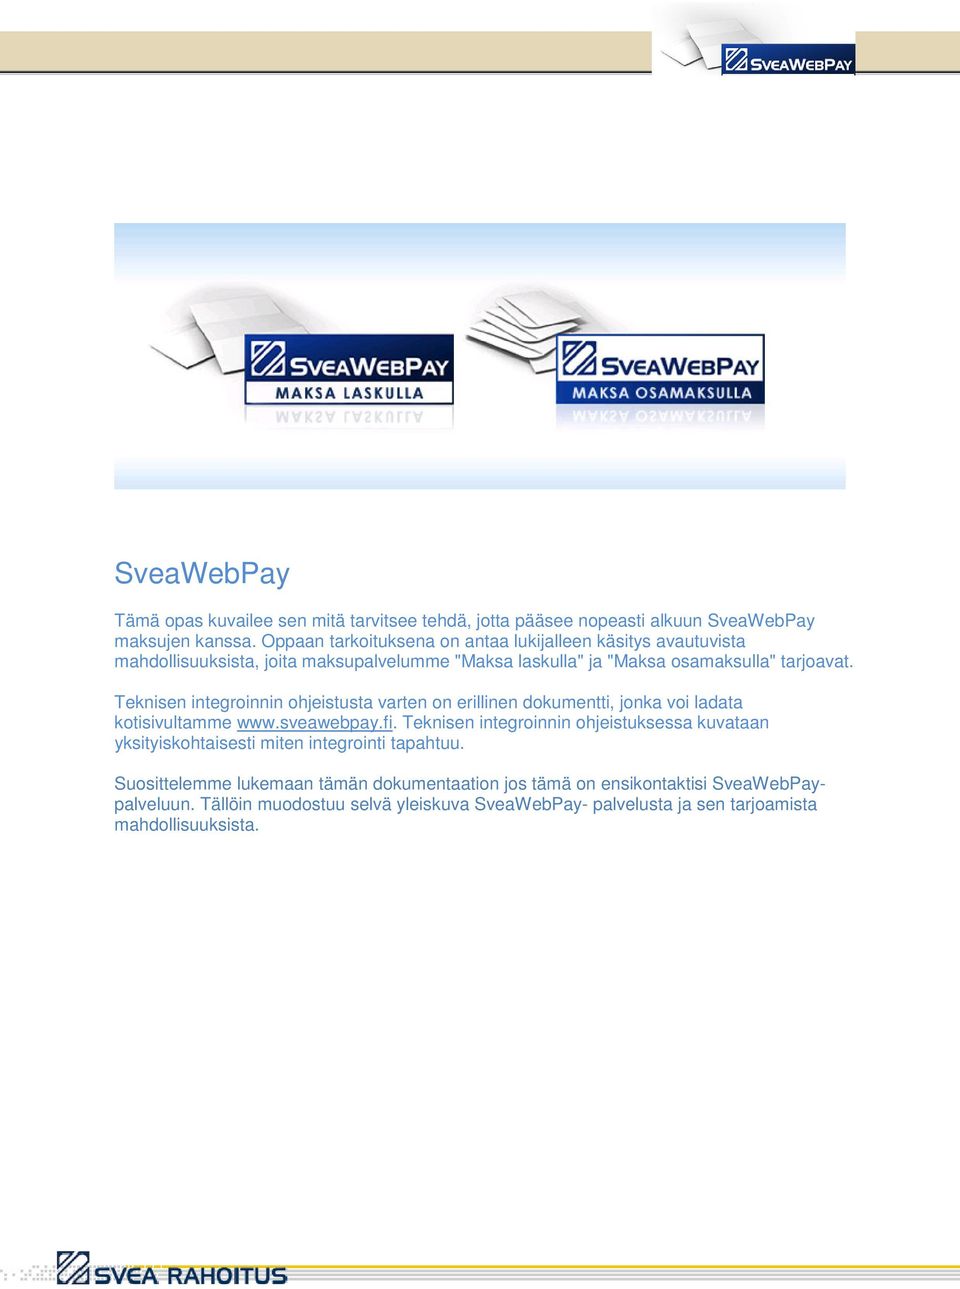 Teknisen integroinnin ohjeistusta varten on erillinen dokumentti, jonka voi ladata kotisivultamme www.sveawebpay.fi.